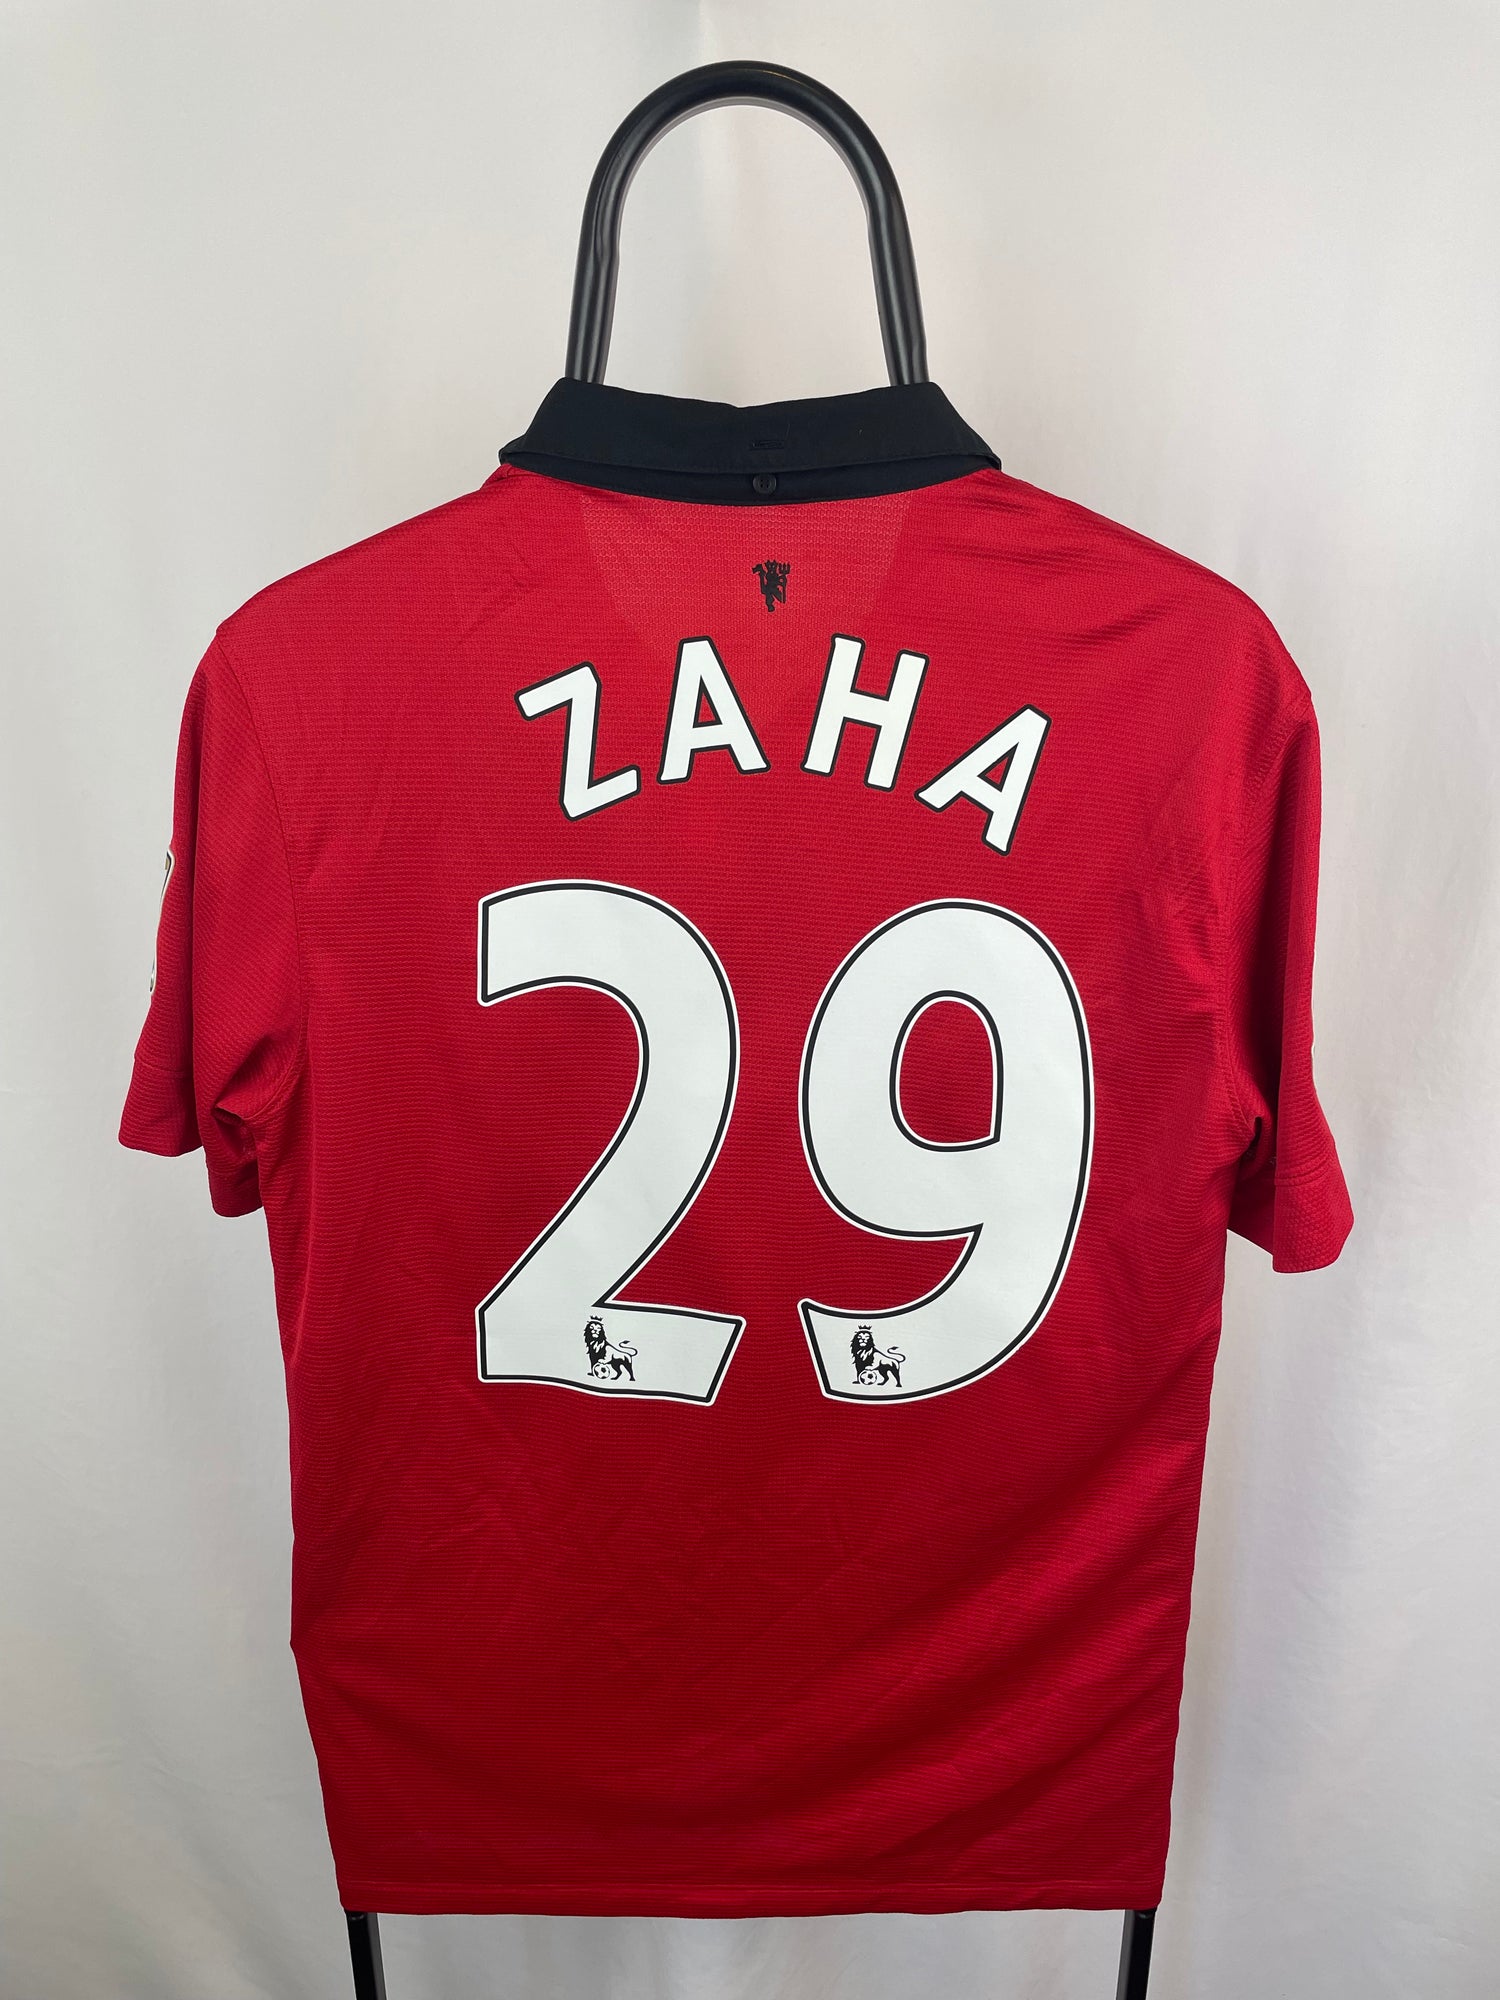 Wilfred Zaha Manchester United 13/14 hjemmebanetrøje - M